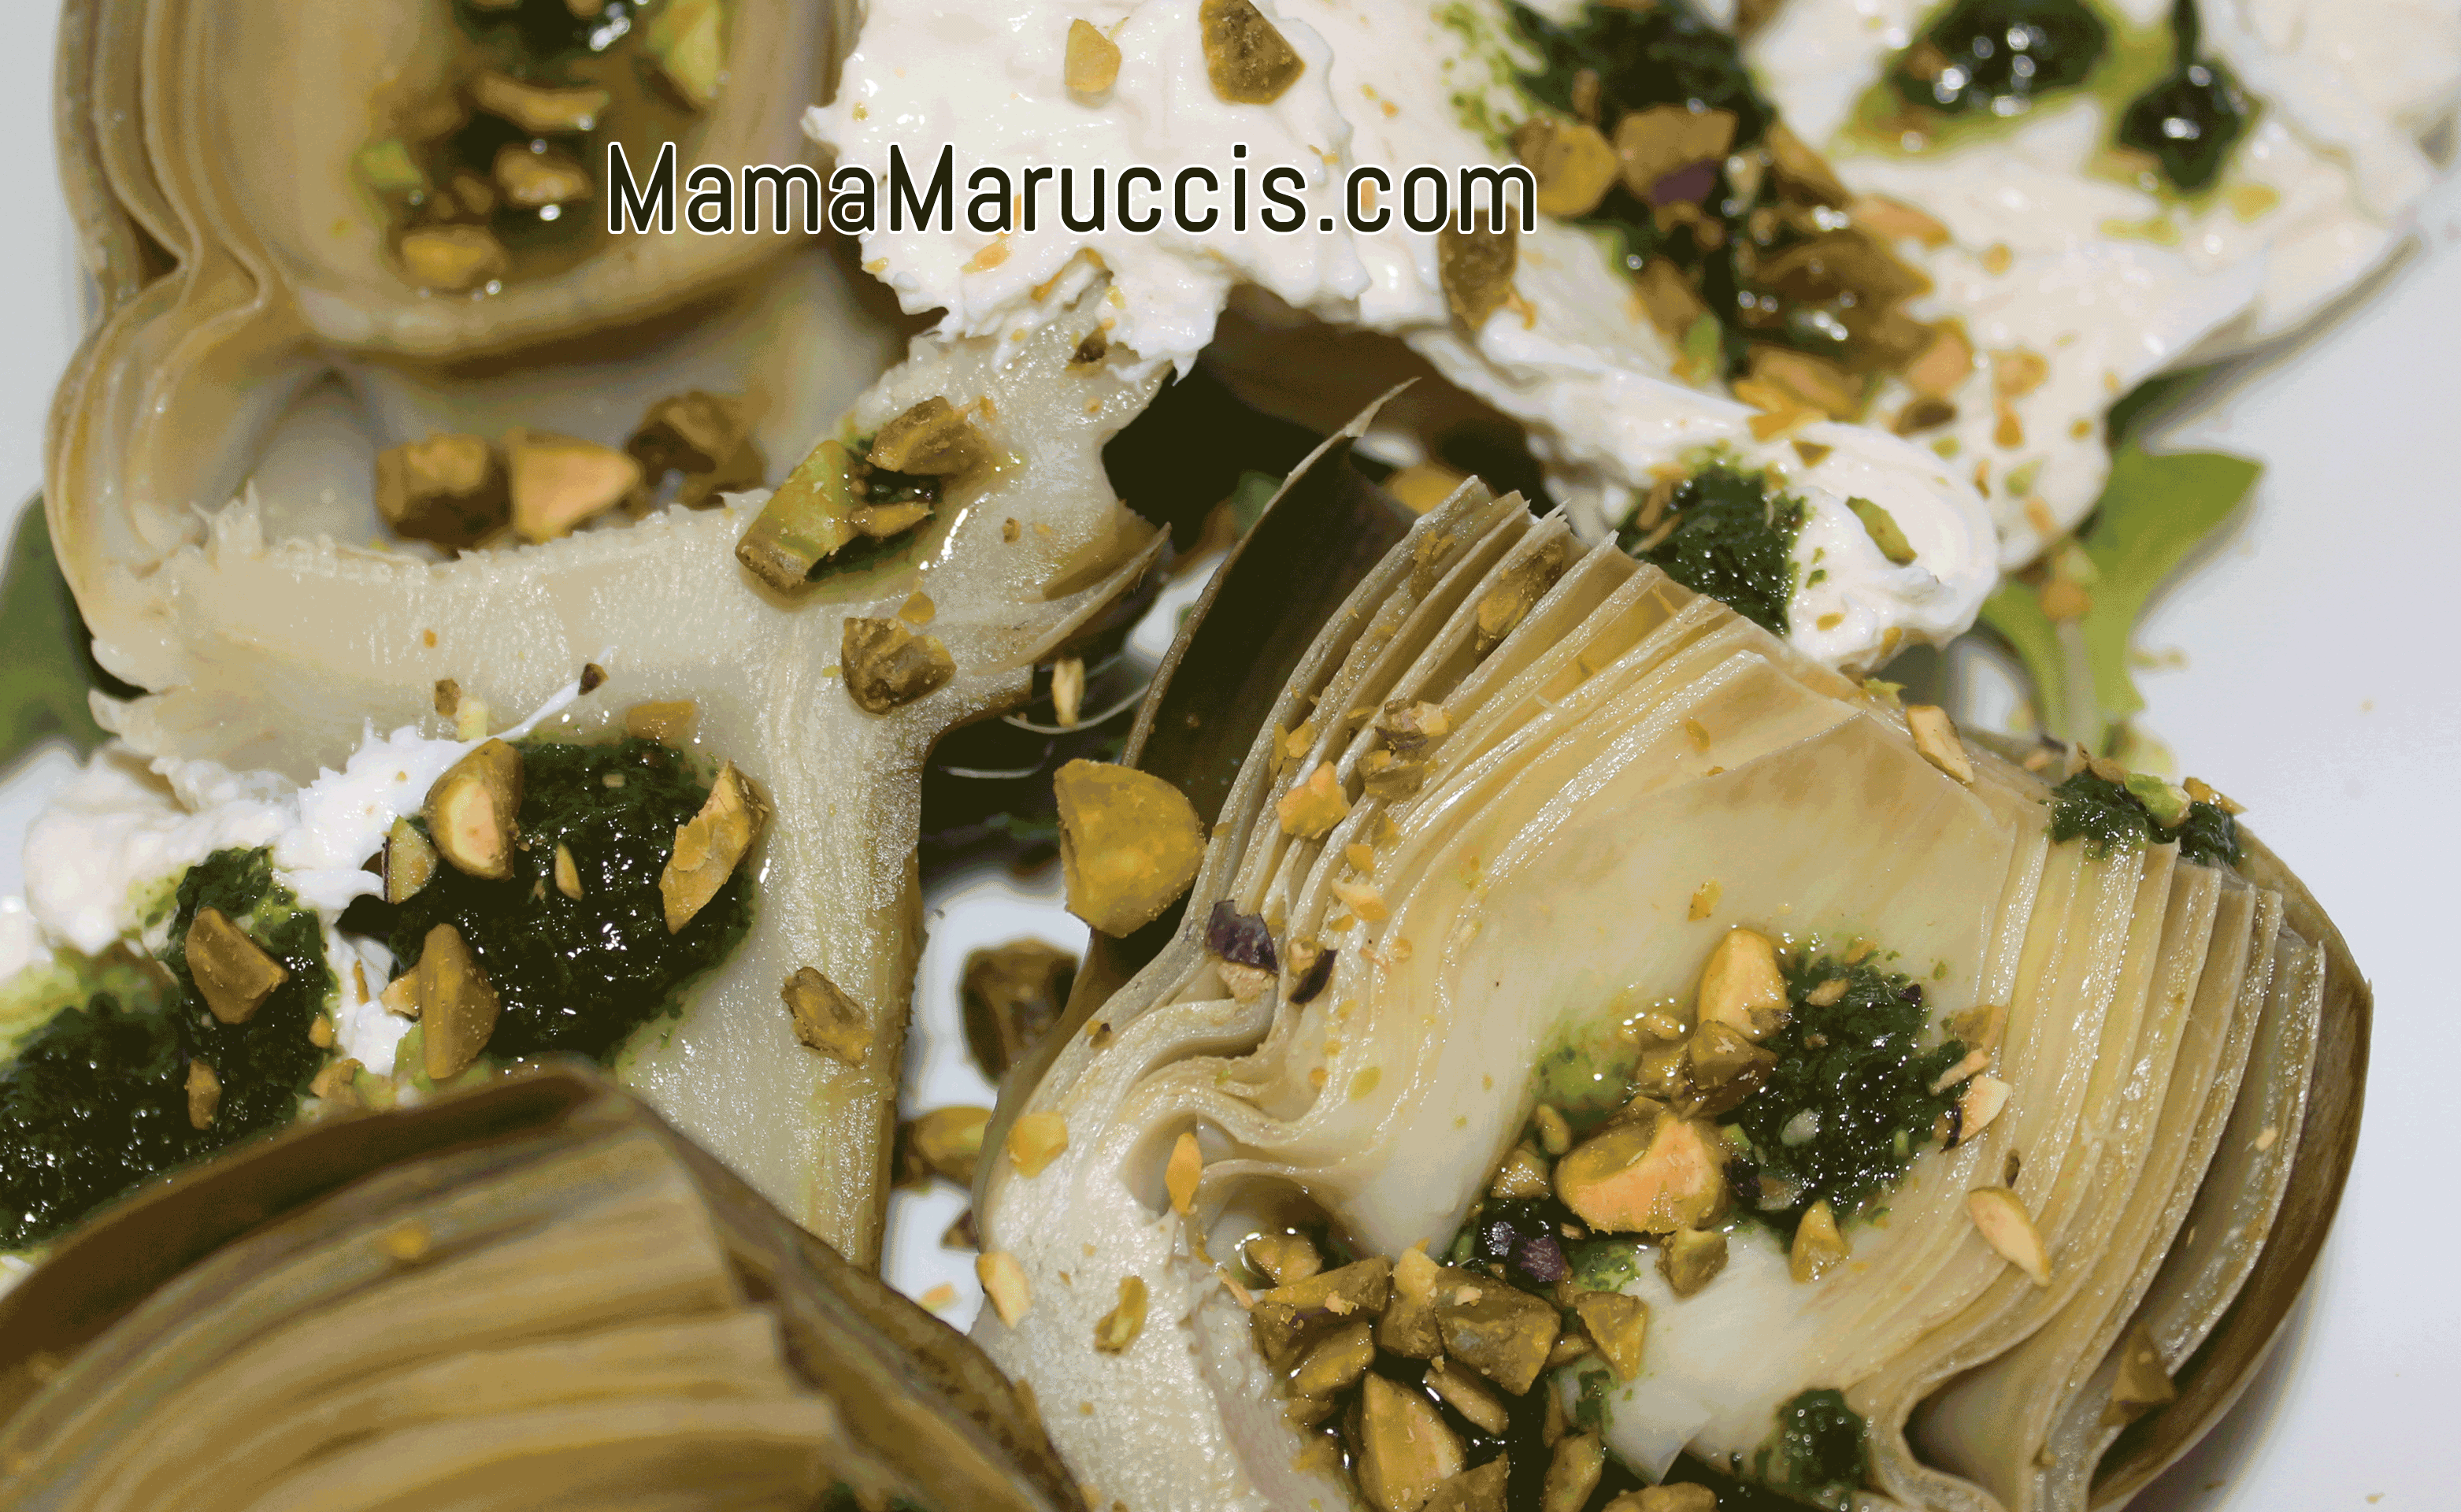 mama Marucci's Artichokes with Pistachio Pesto and Burrata